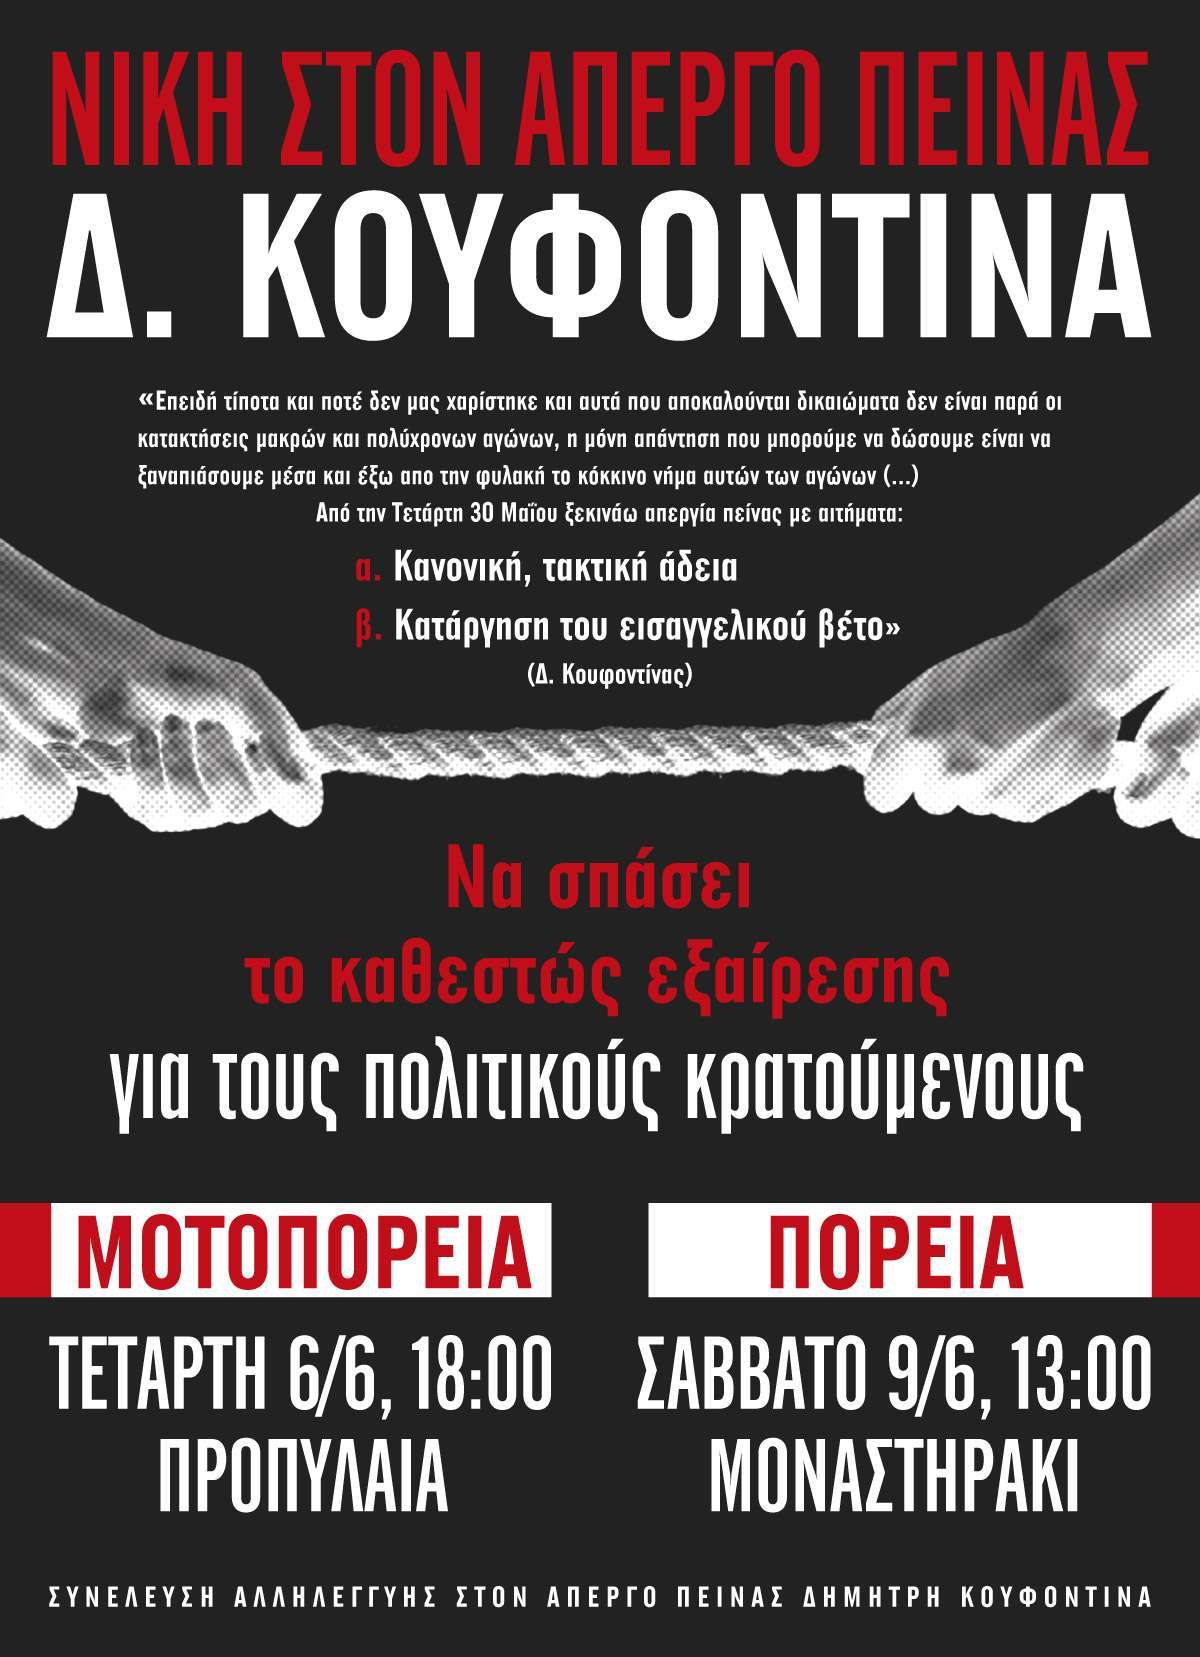 Αθήνα: Νίκη στην απεργία πείνας του Δ. Κουφοντίνα – Μοτοπορεία 06/06, 18:00 και Πορεία 09/06, 13:00